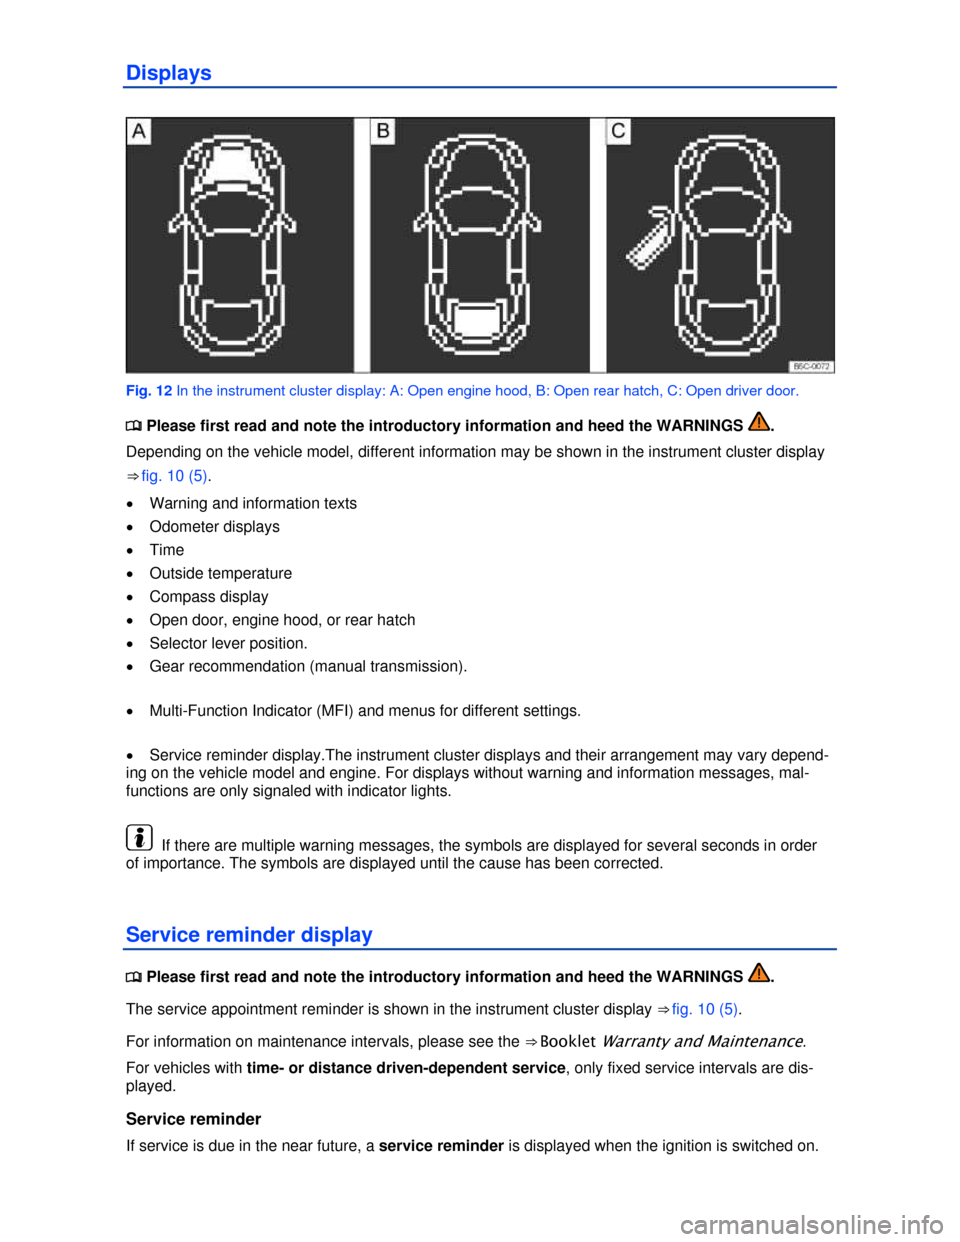 VOLKSWAGEN BEETLE 2013 3.G Owners Manual  
Displays 
 
Fig. 12 In the instrument cluster display: A: Open engine hood, B: Open rear hatch, C: Open driver door. 
�